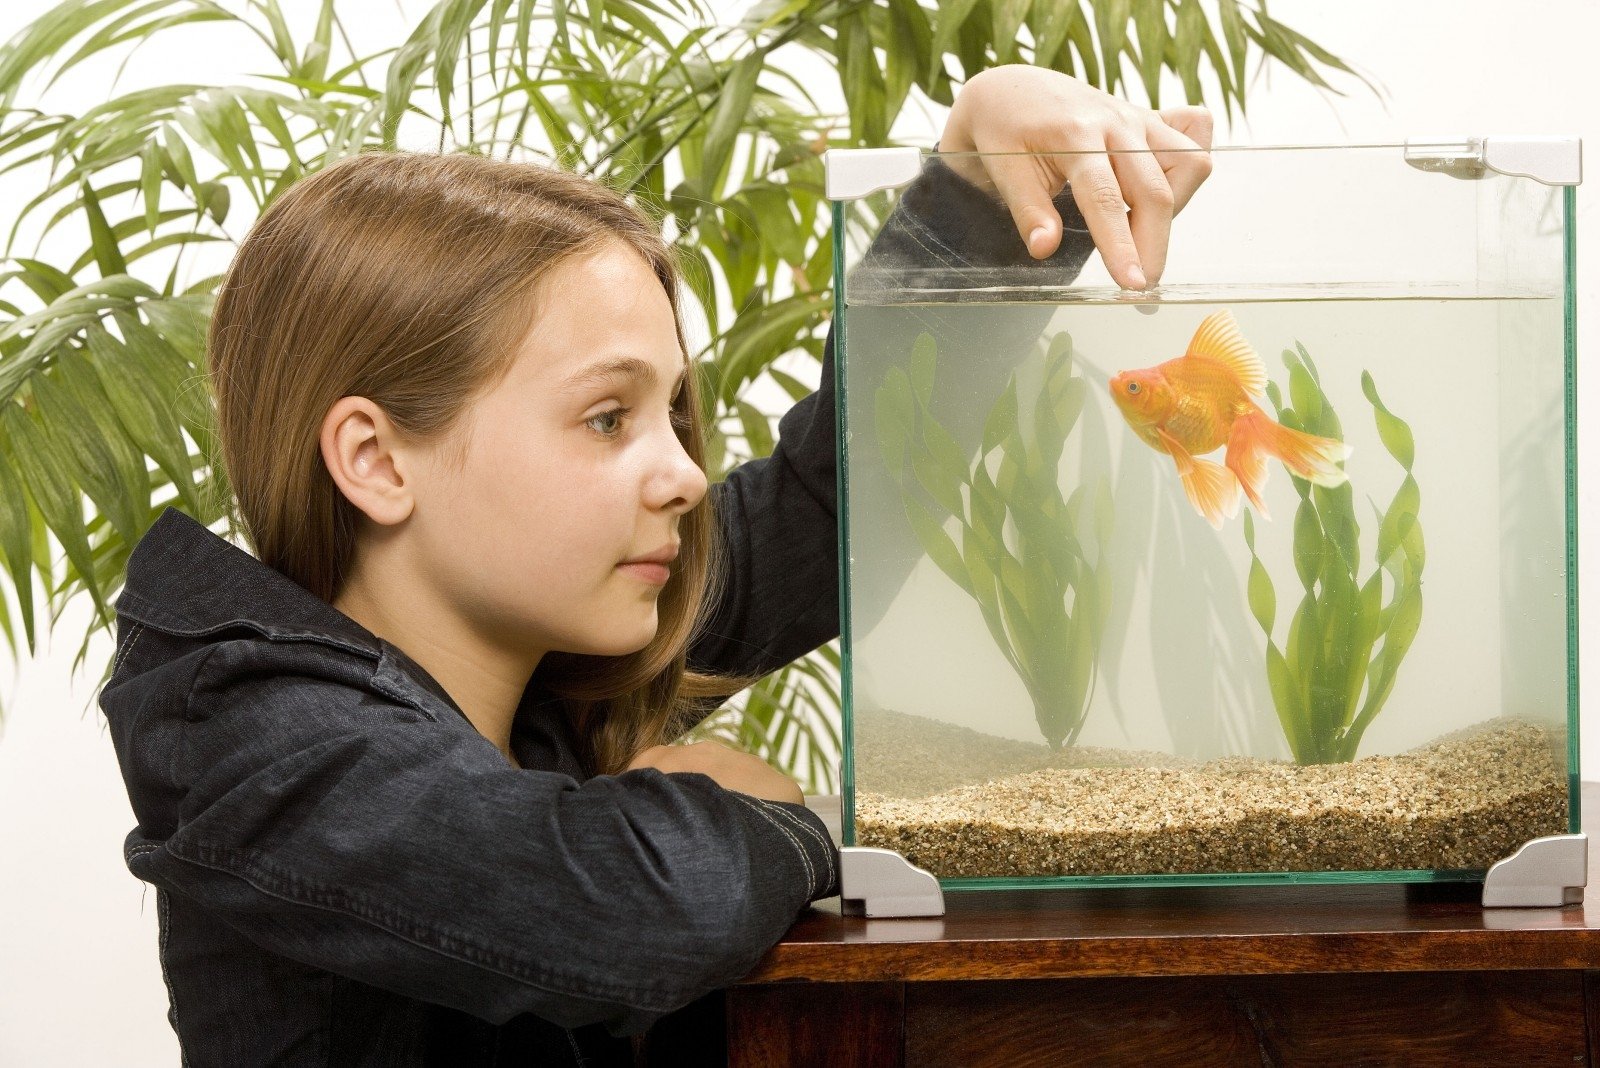 Наблюдать за рыбками. Рыбки для аквариума. Человек в аквариуме. Девочка с аквариумом. Аквариум с рыбками для детей.